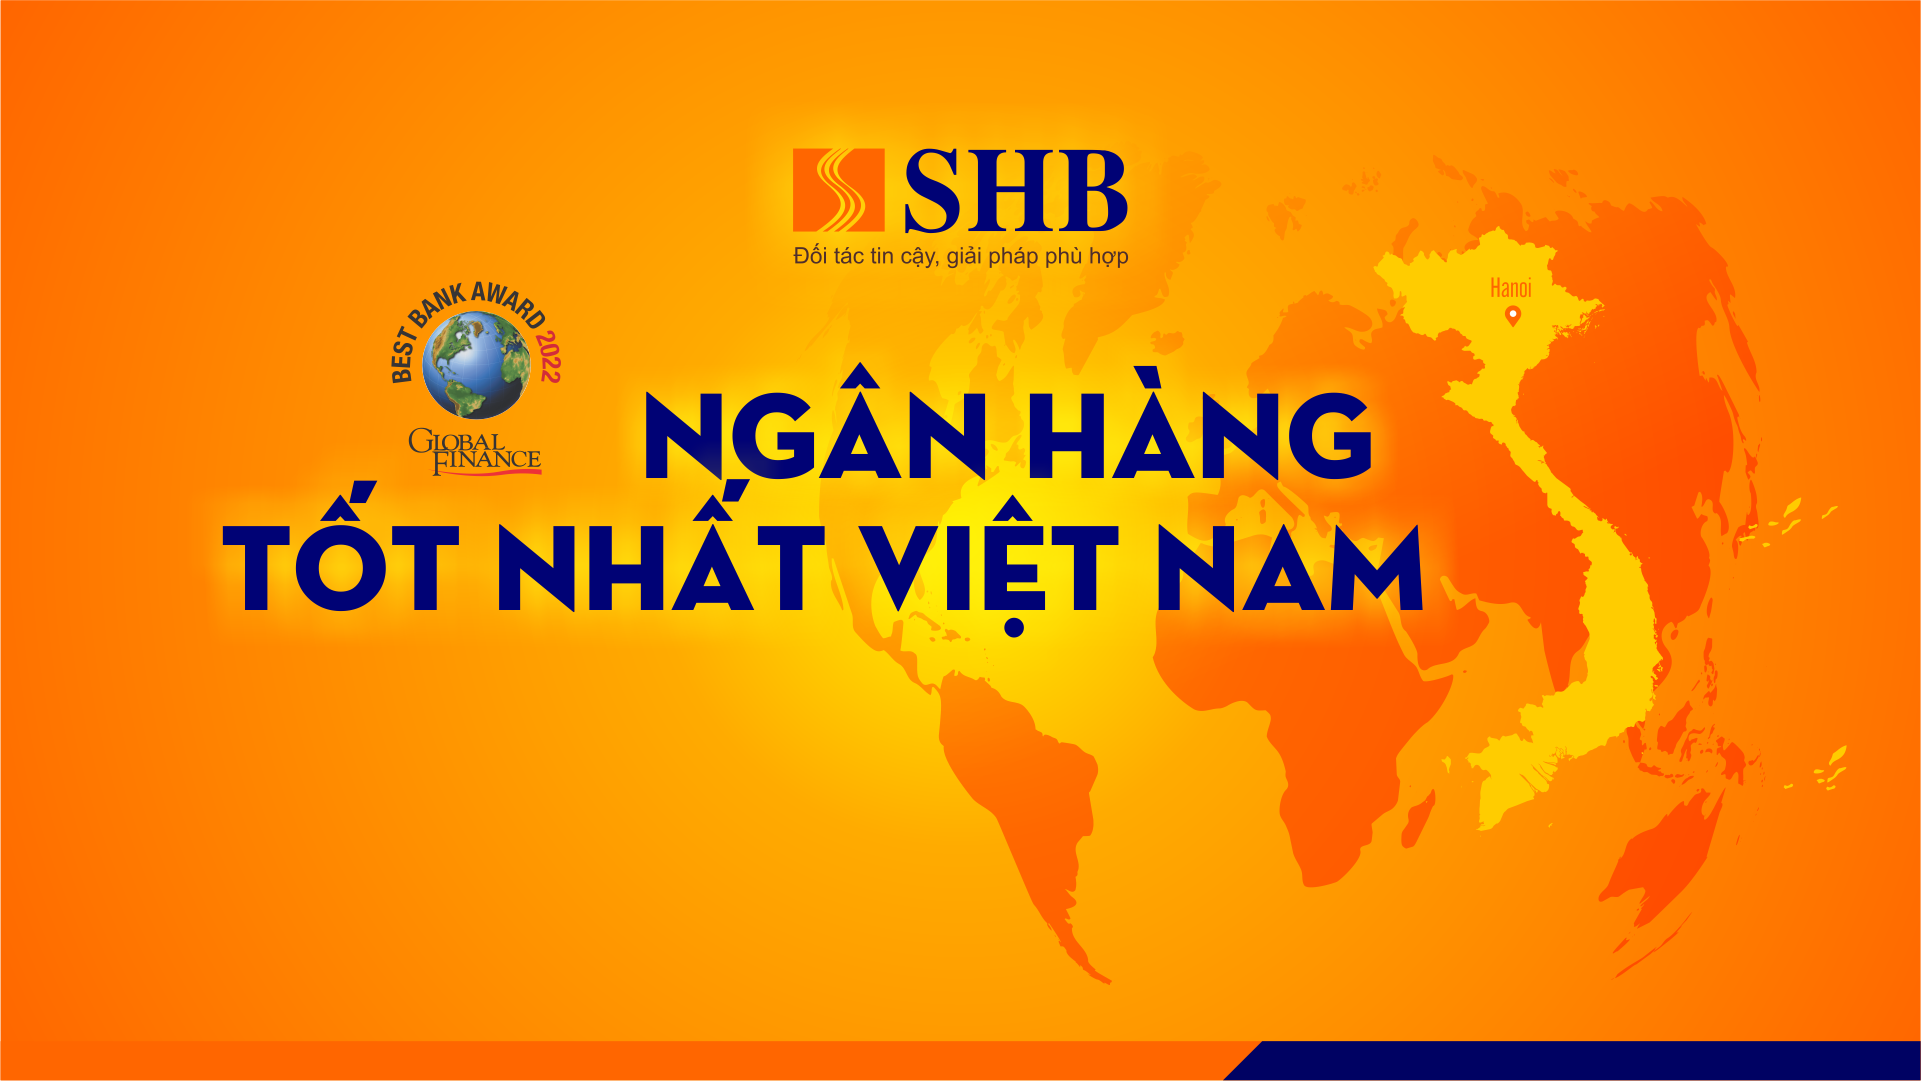 SHB được vinh danh Ngân hàng Tốt nhất Việt Nam